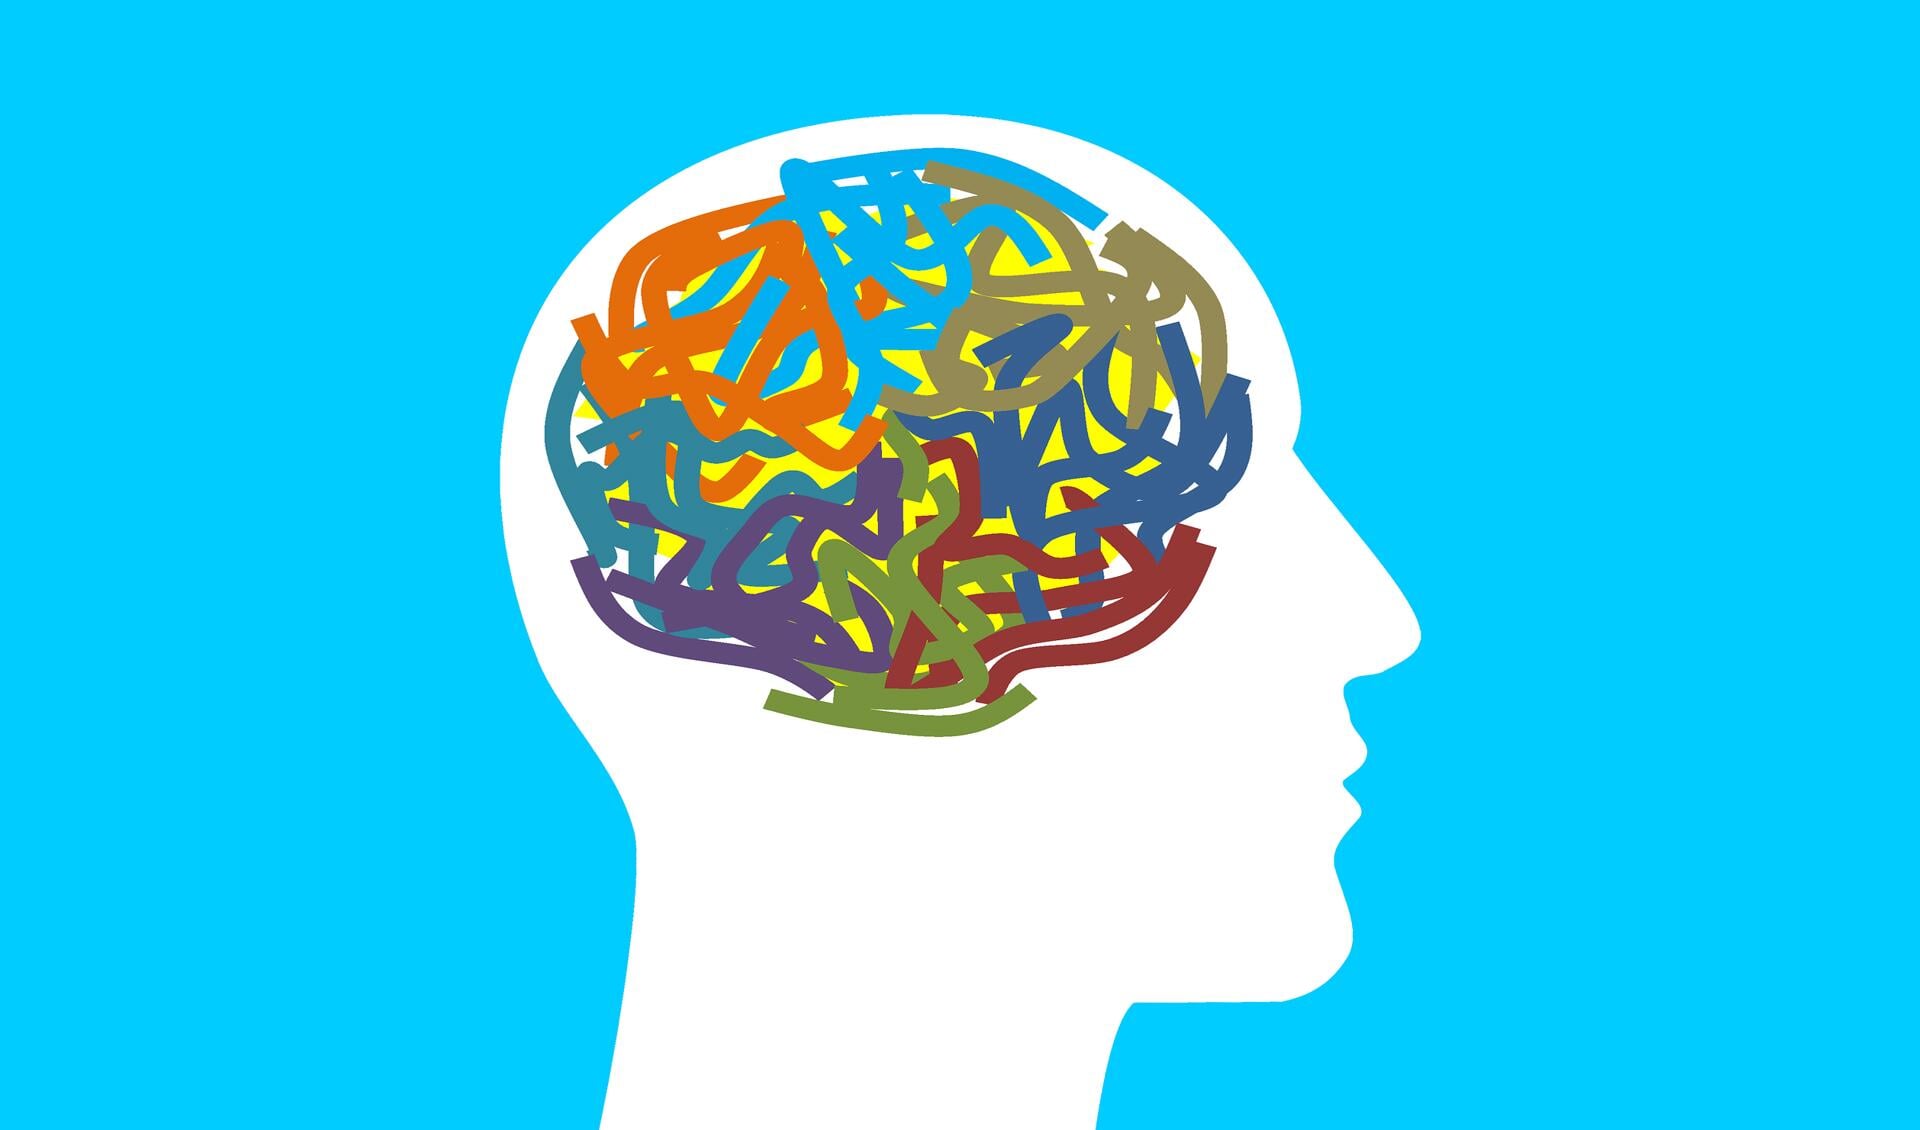 Hoe werkt je brein nou precies? Dat kom je te weten tijdens de workshops die in de Bibliotheek Bollenstreek worden gegeven. 